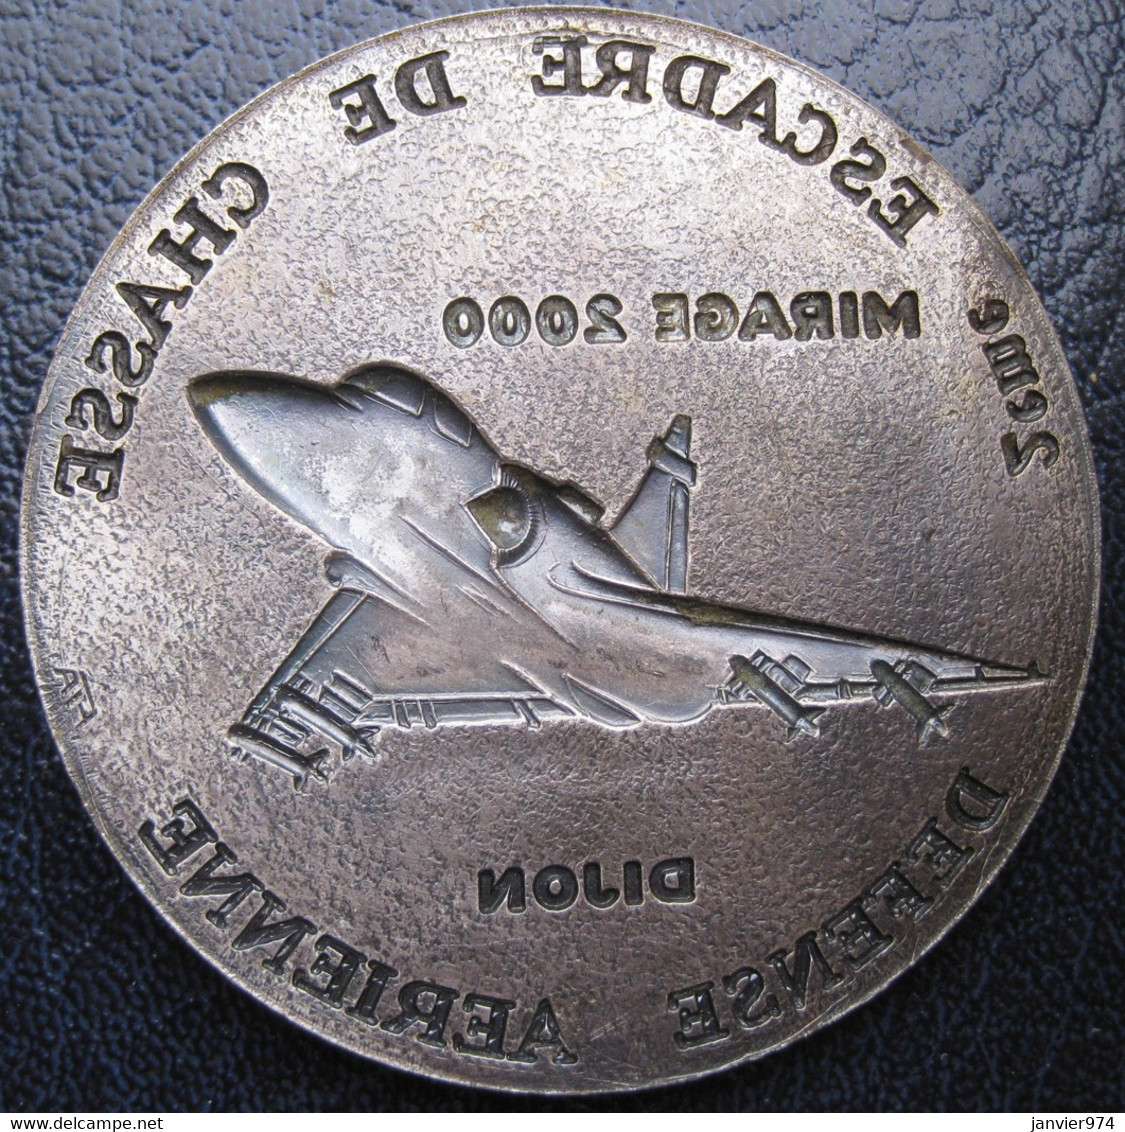 Applique Médaille 2e Escadre De Chasse Défense Aérienne Dijon Mirage 2000 - Frankrijk